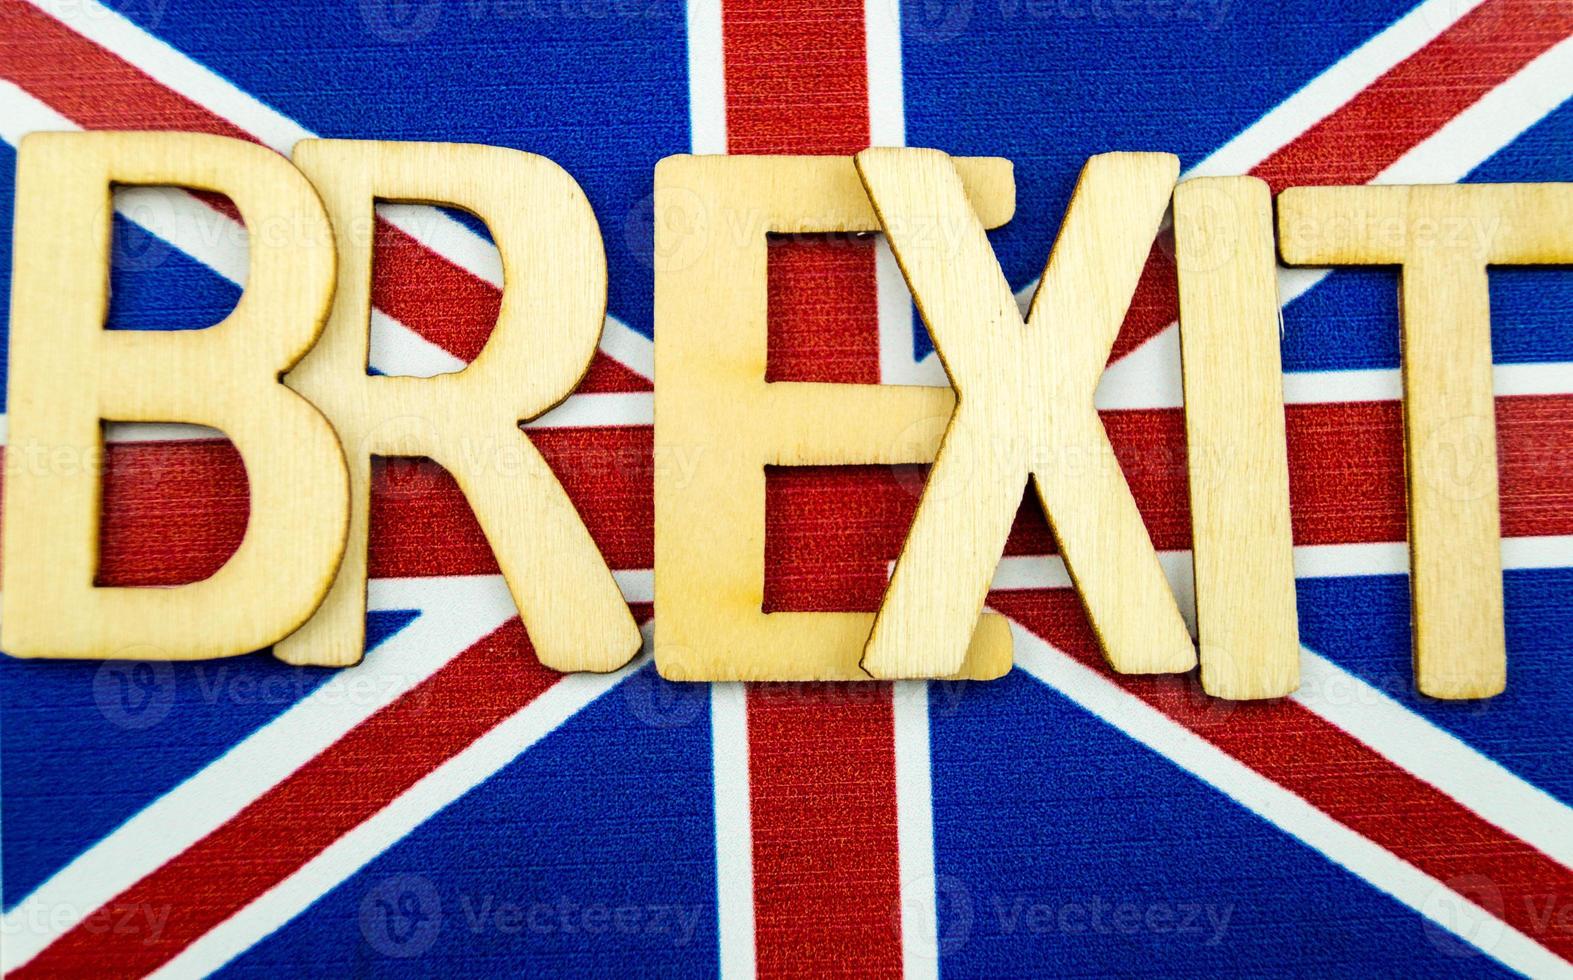 brexit - Storbritannien vill lämna Europeiska gemenskapen foto